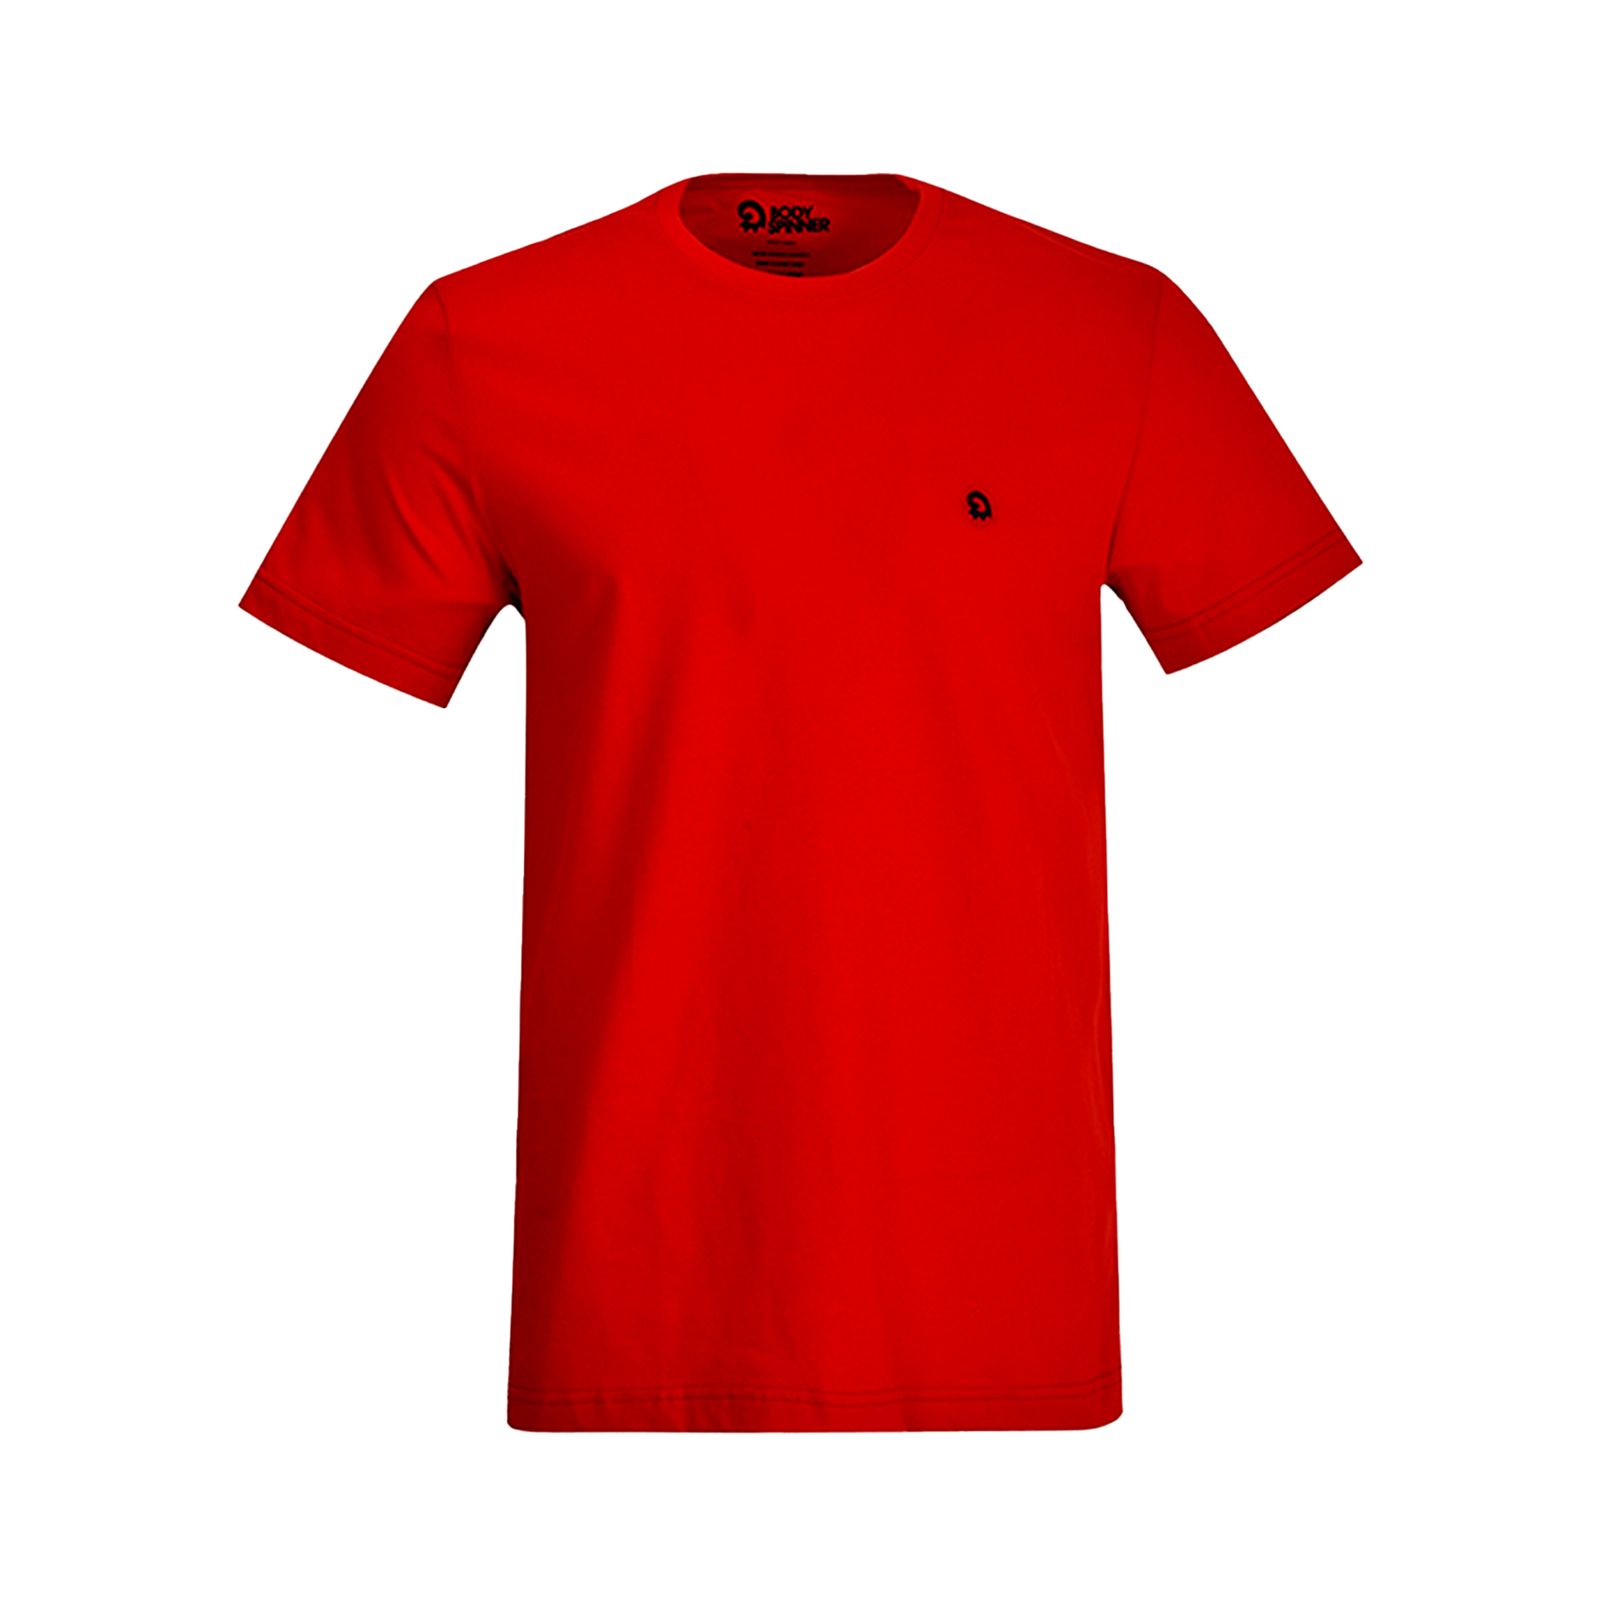 تی شرت آستین کوتاه مردانه بادی اسپینر مدل 11964737 رنگ قرمز -  - 1